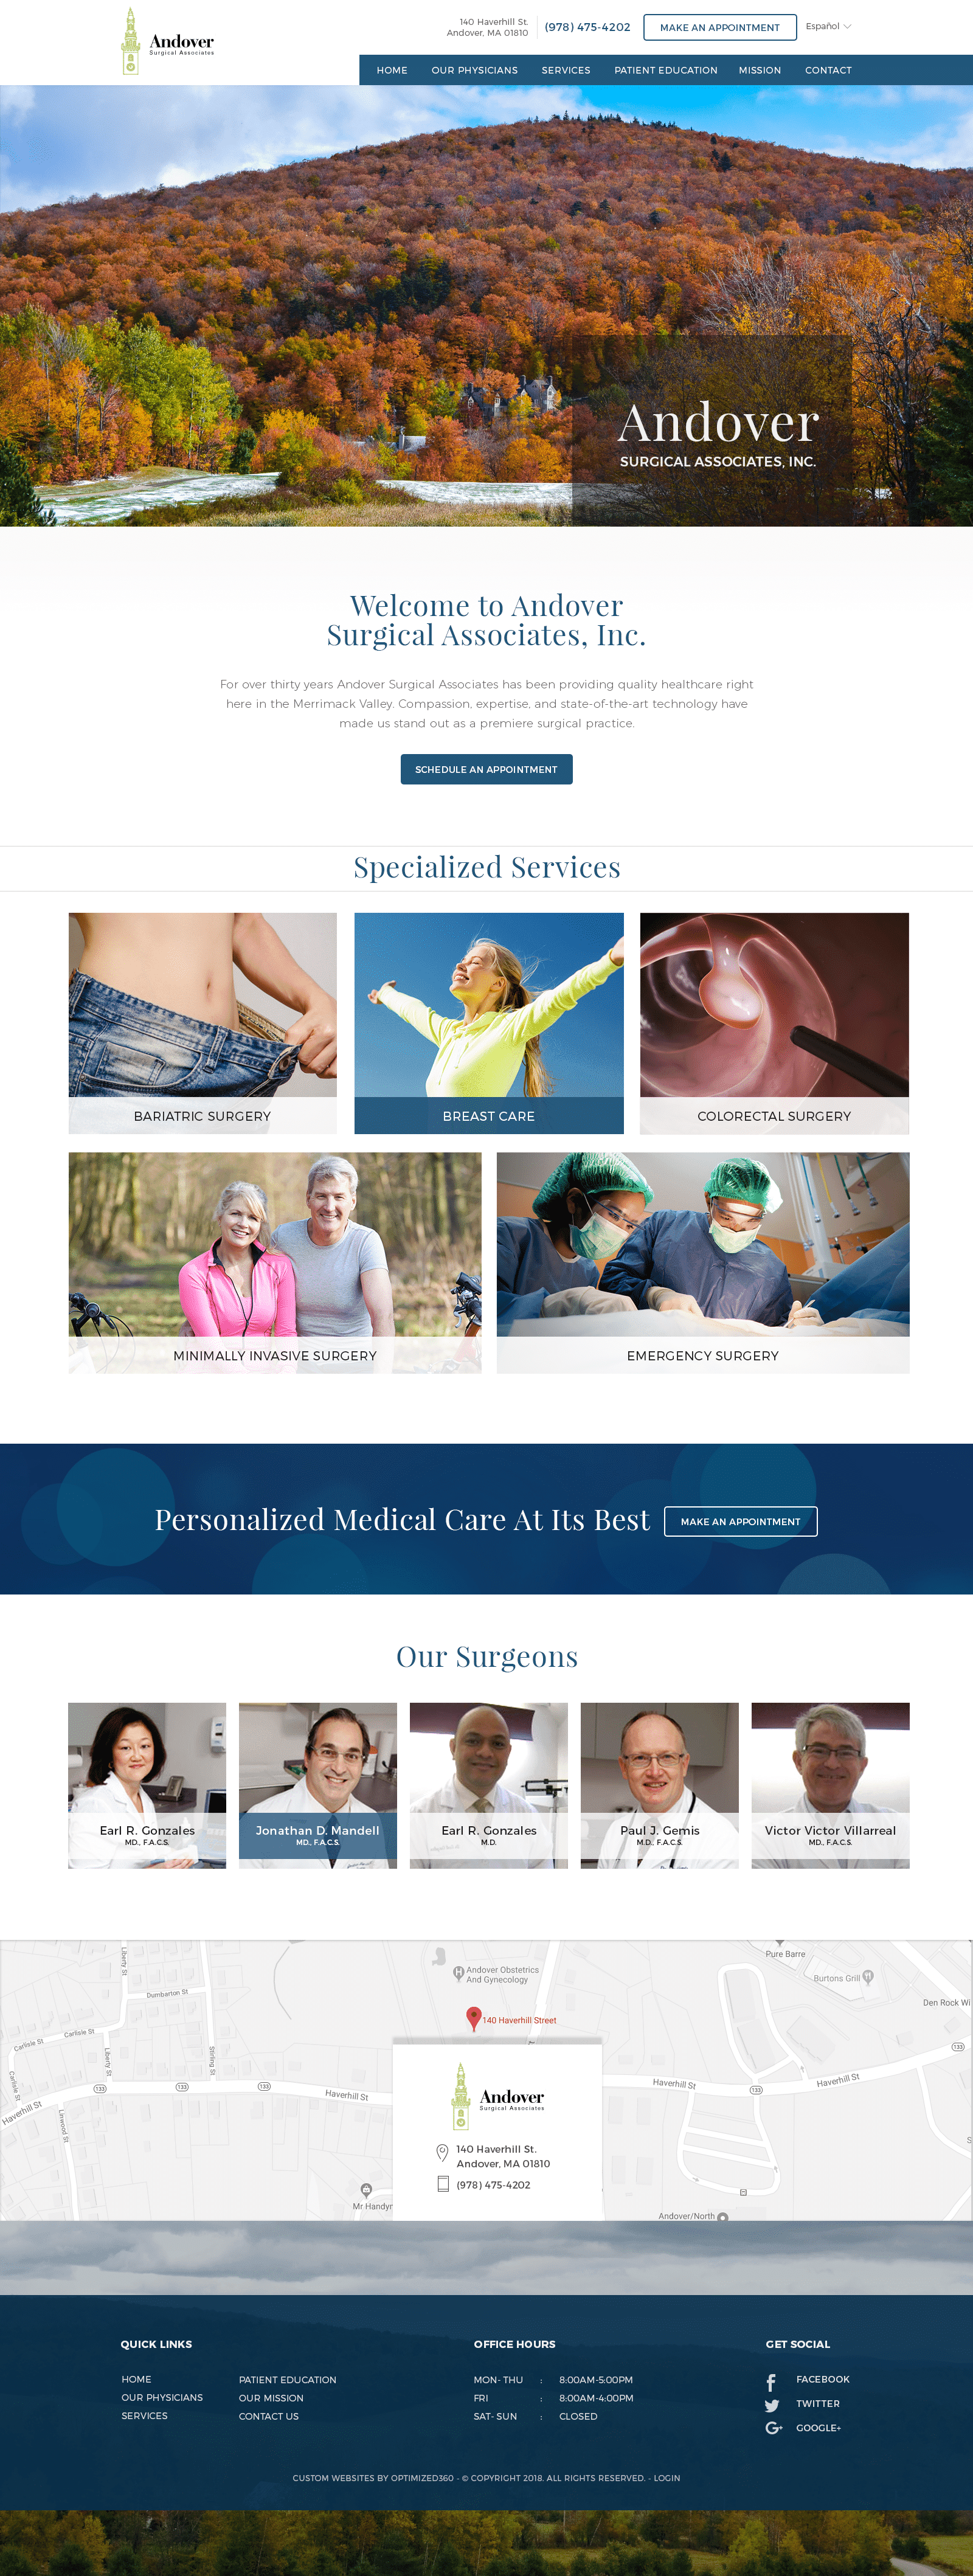 Andover Surgical Associates Website